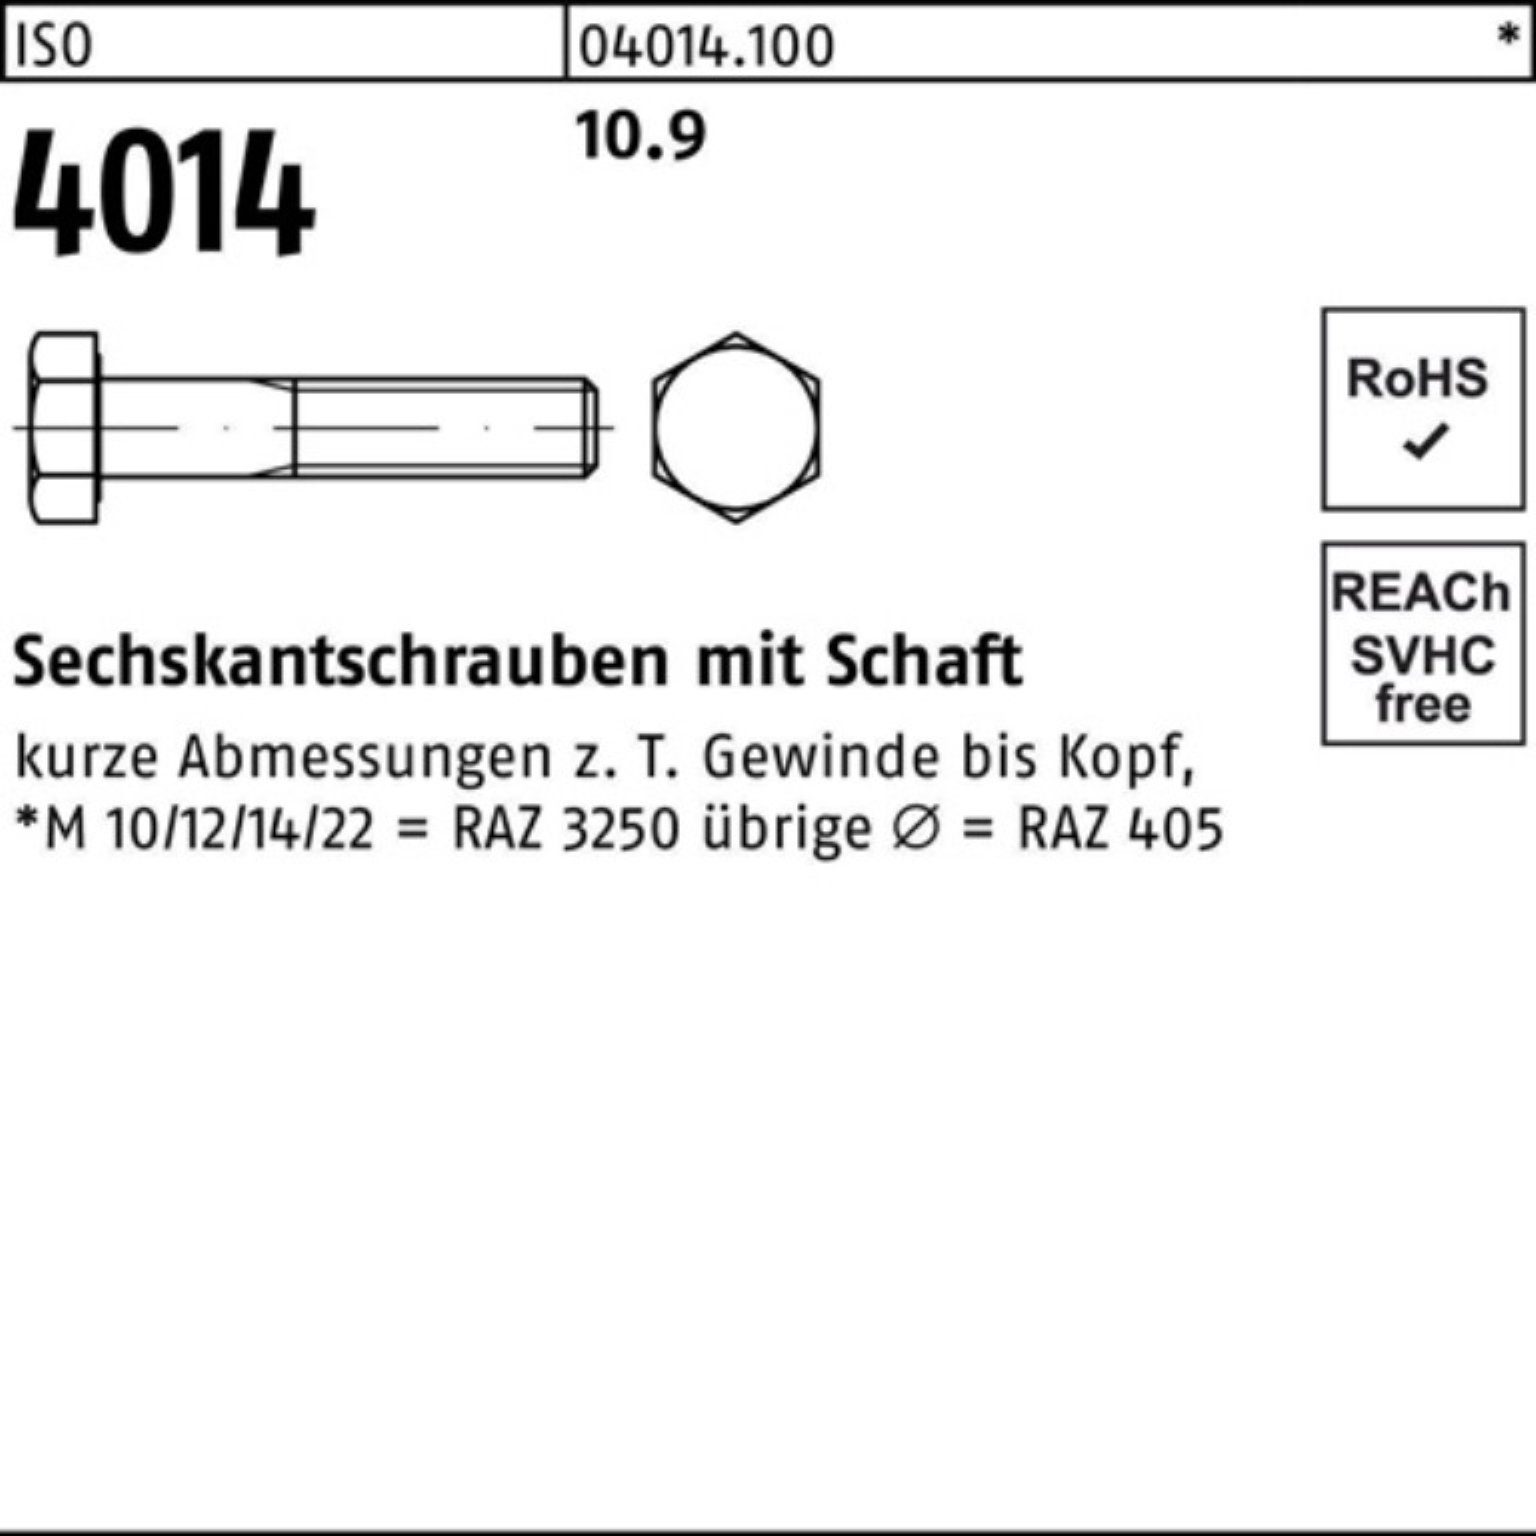 Bufab Sechskantschraube Pack 10.9 IS Sechskantschraube 320 4014 100er Schaft ISO Stück M20x 1